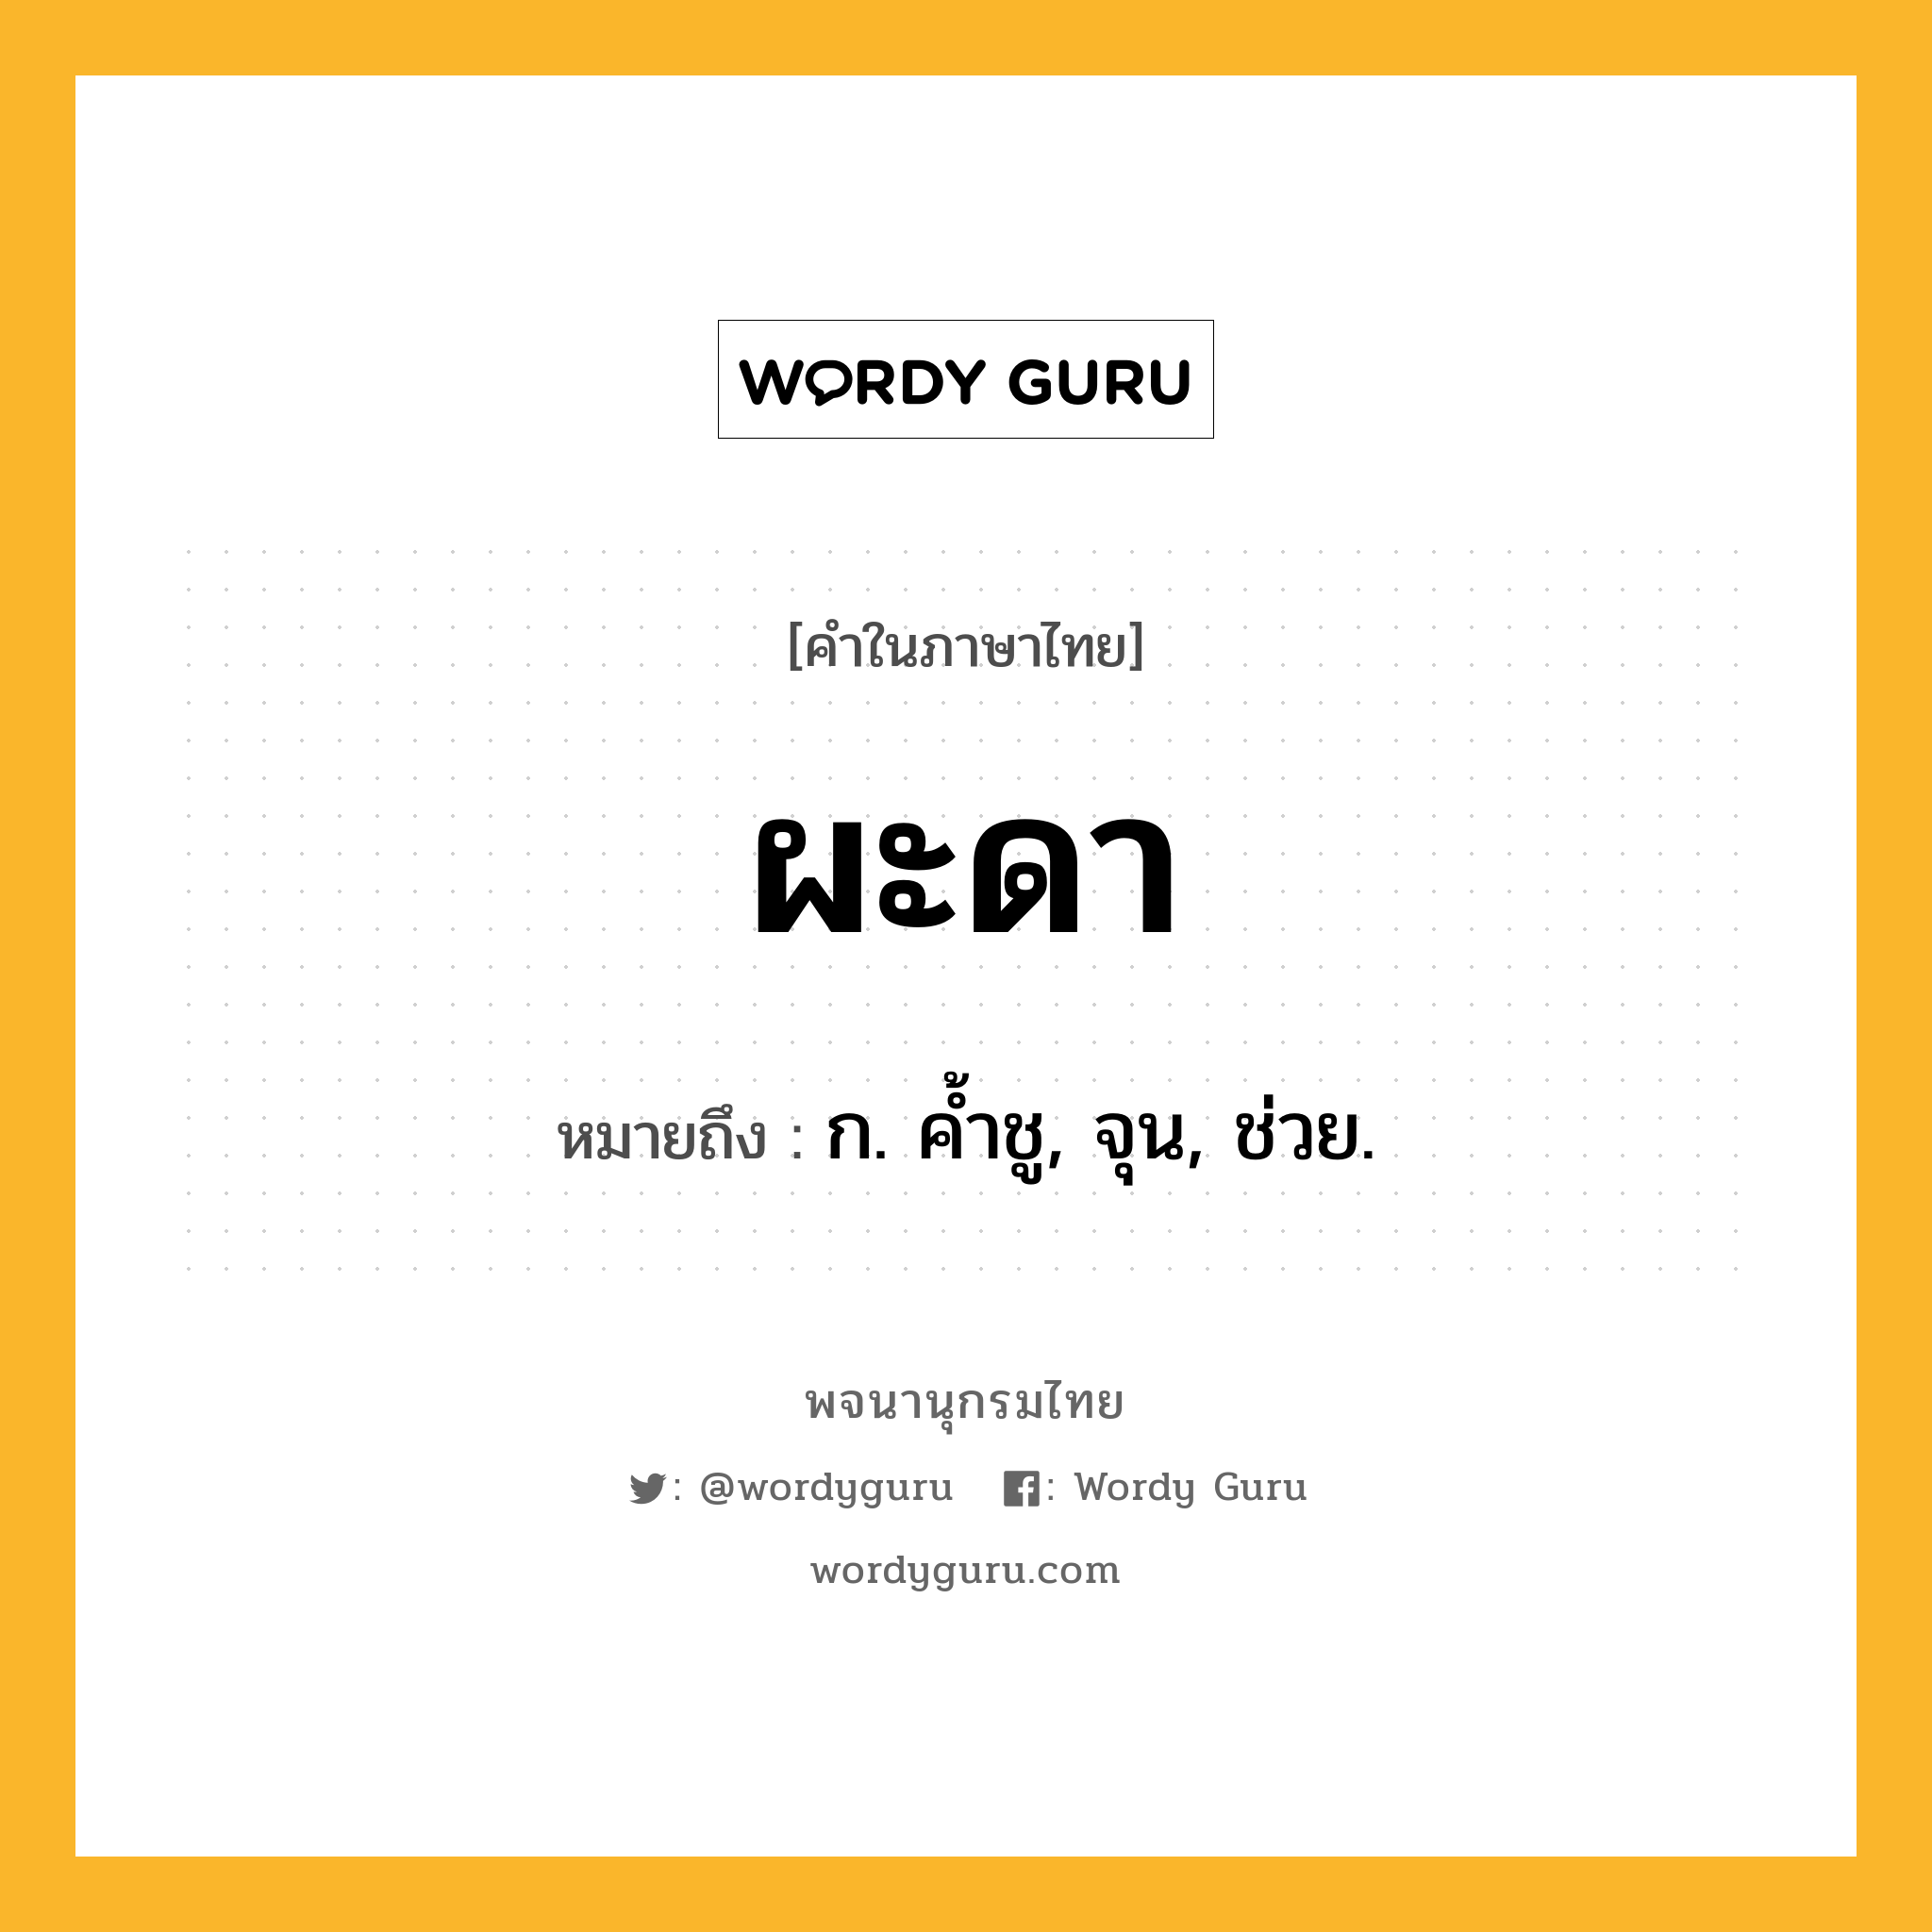 ผะดา ความหมาย หมายถึงอะไร?, คำในภาษาไทย ผะดา หมายถึง ก. คํ้าชู, จุน, ช่วย.